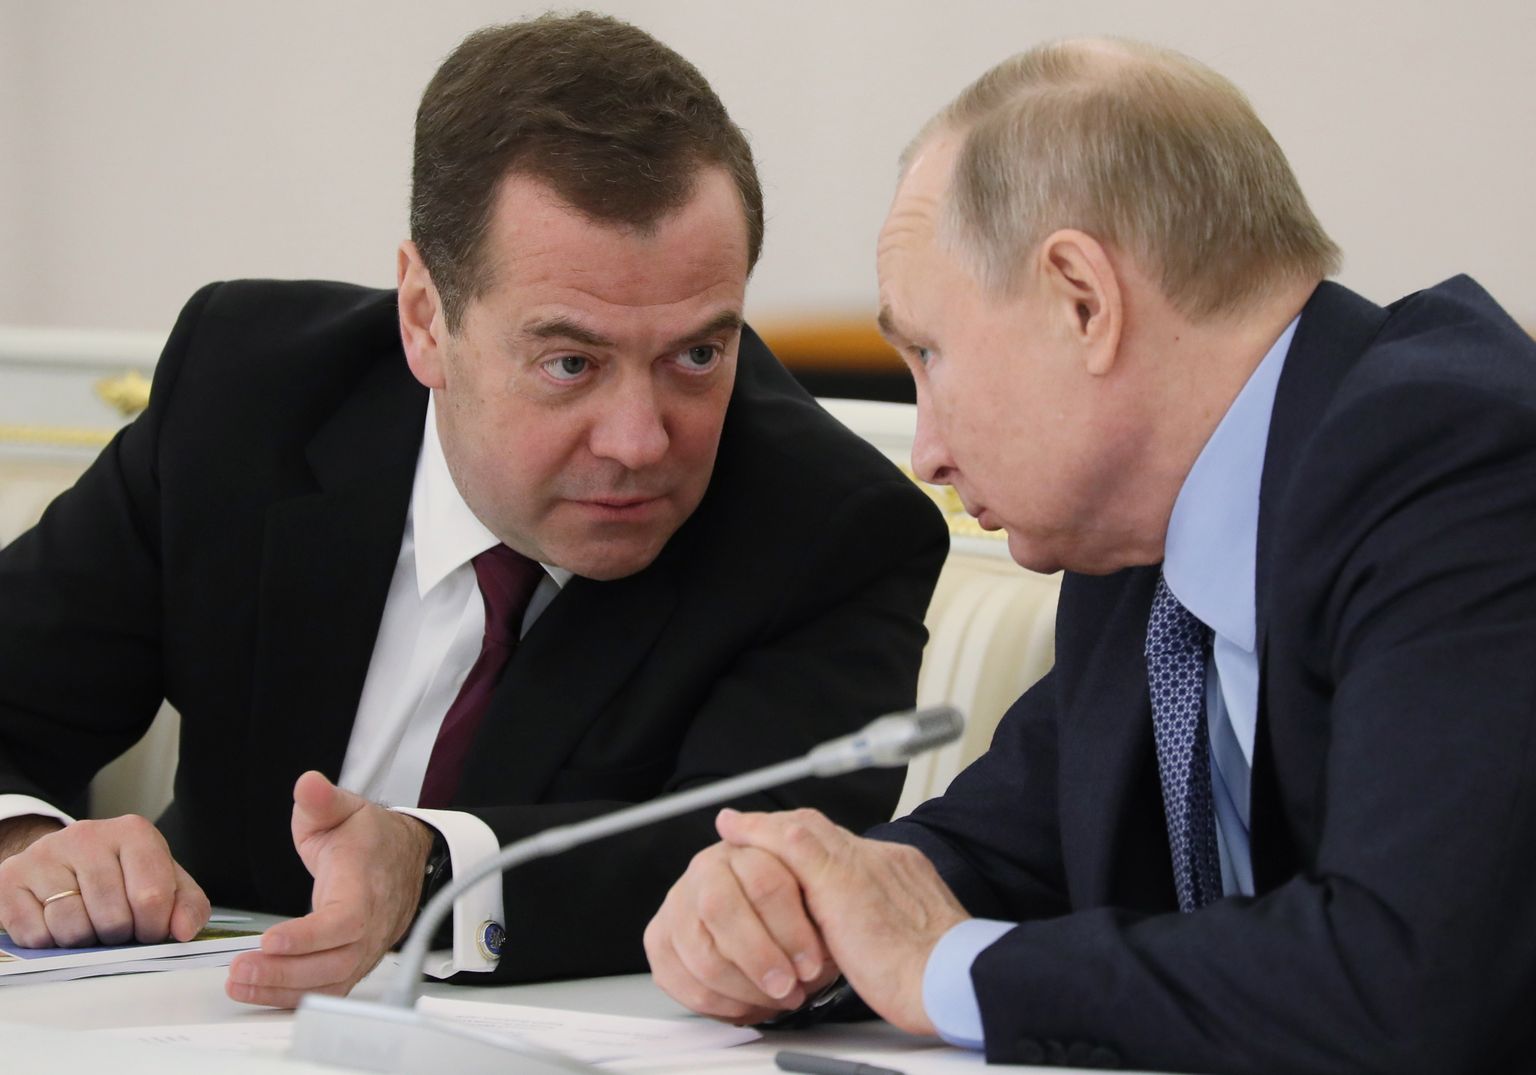 Venemaa julgeolekunõukogu aseesimees Dmitri Medvedev (vasakul) ja Venemaa president Vladimir Putin (paremal).